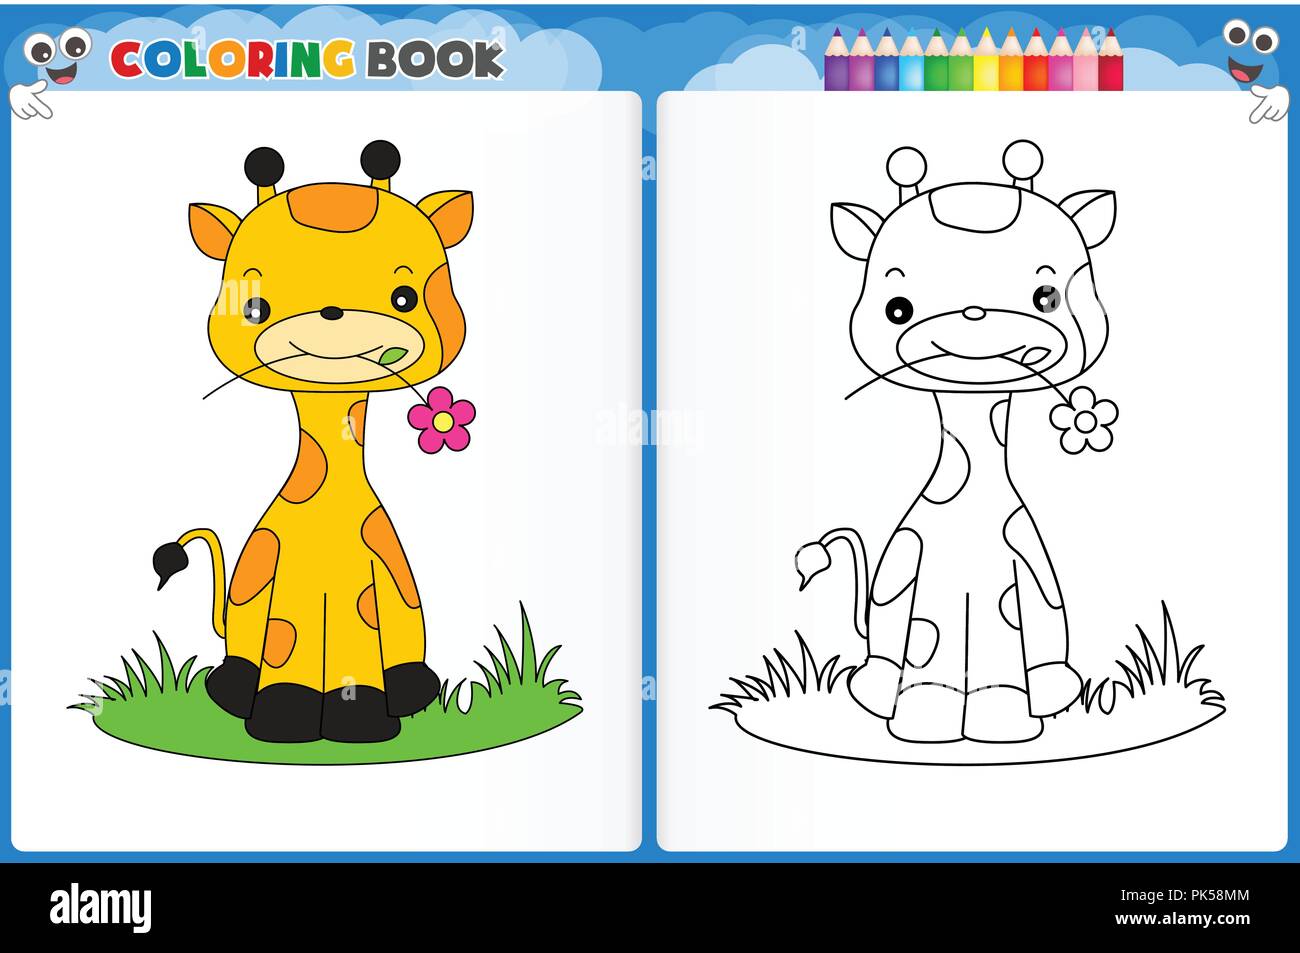 https://c8.alamy.com/compes/pk58mm/pagina-para-colorear-cute-giraffe-con-coloridos-muestra-hoja-imprimible-guarderias-preescolares-para-ninos-para-mejorar-las-habilidades-para-colorear-pk58mm.jpg